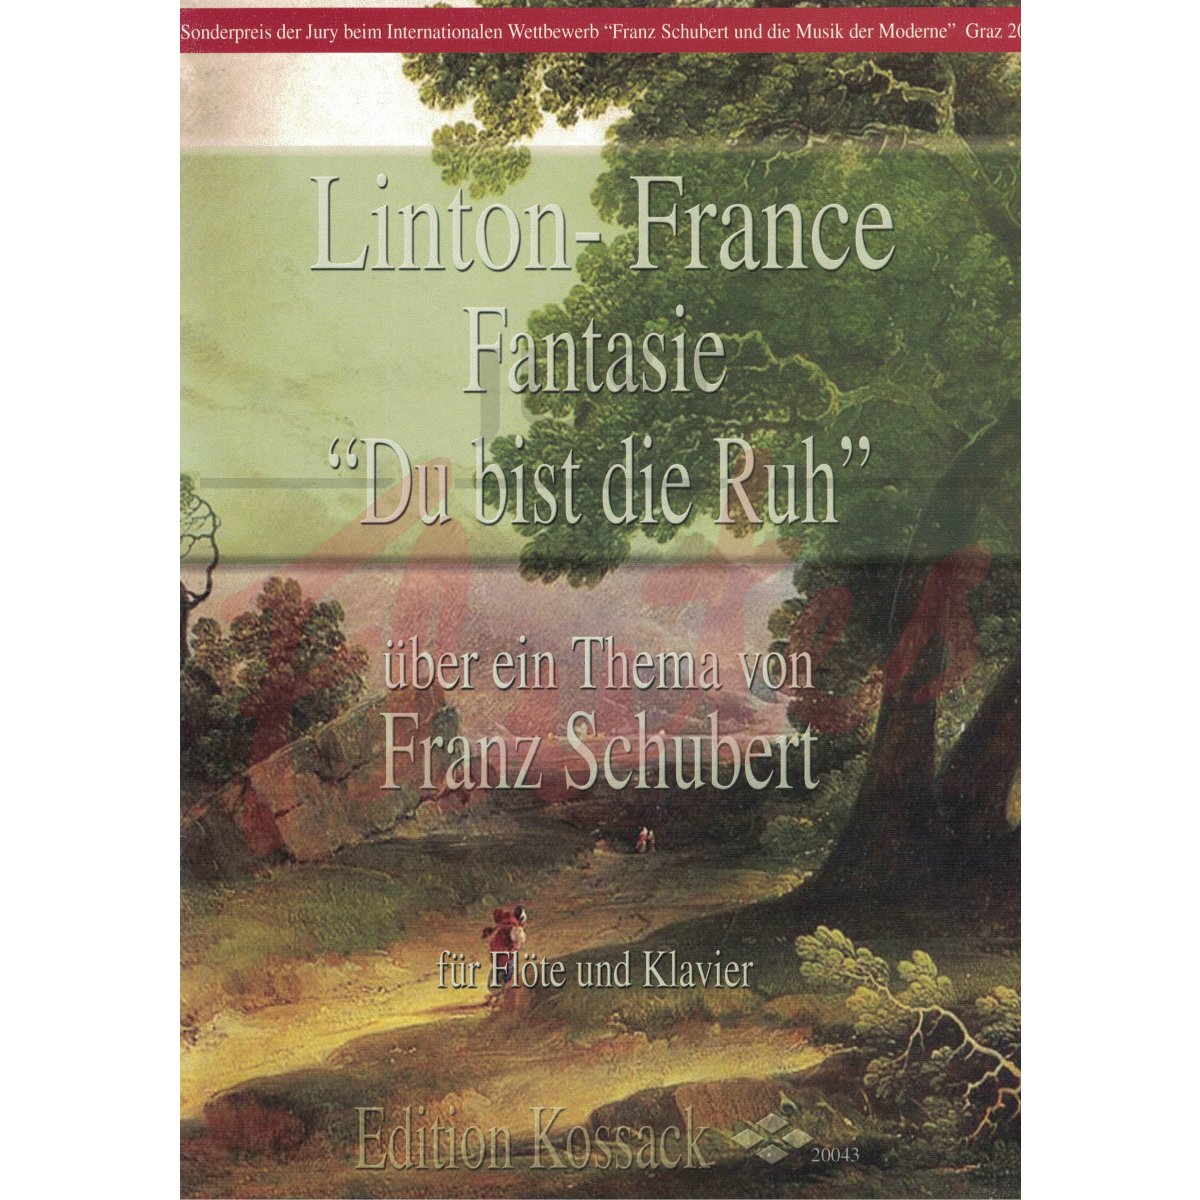 Fantasie on Schubert 'Du bist die Ruh' for Flute and Piano